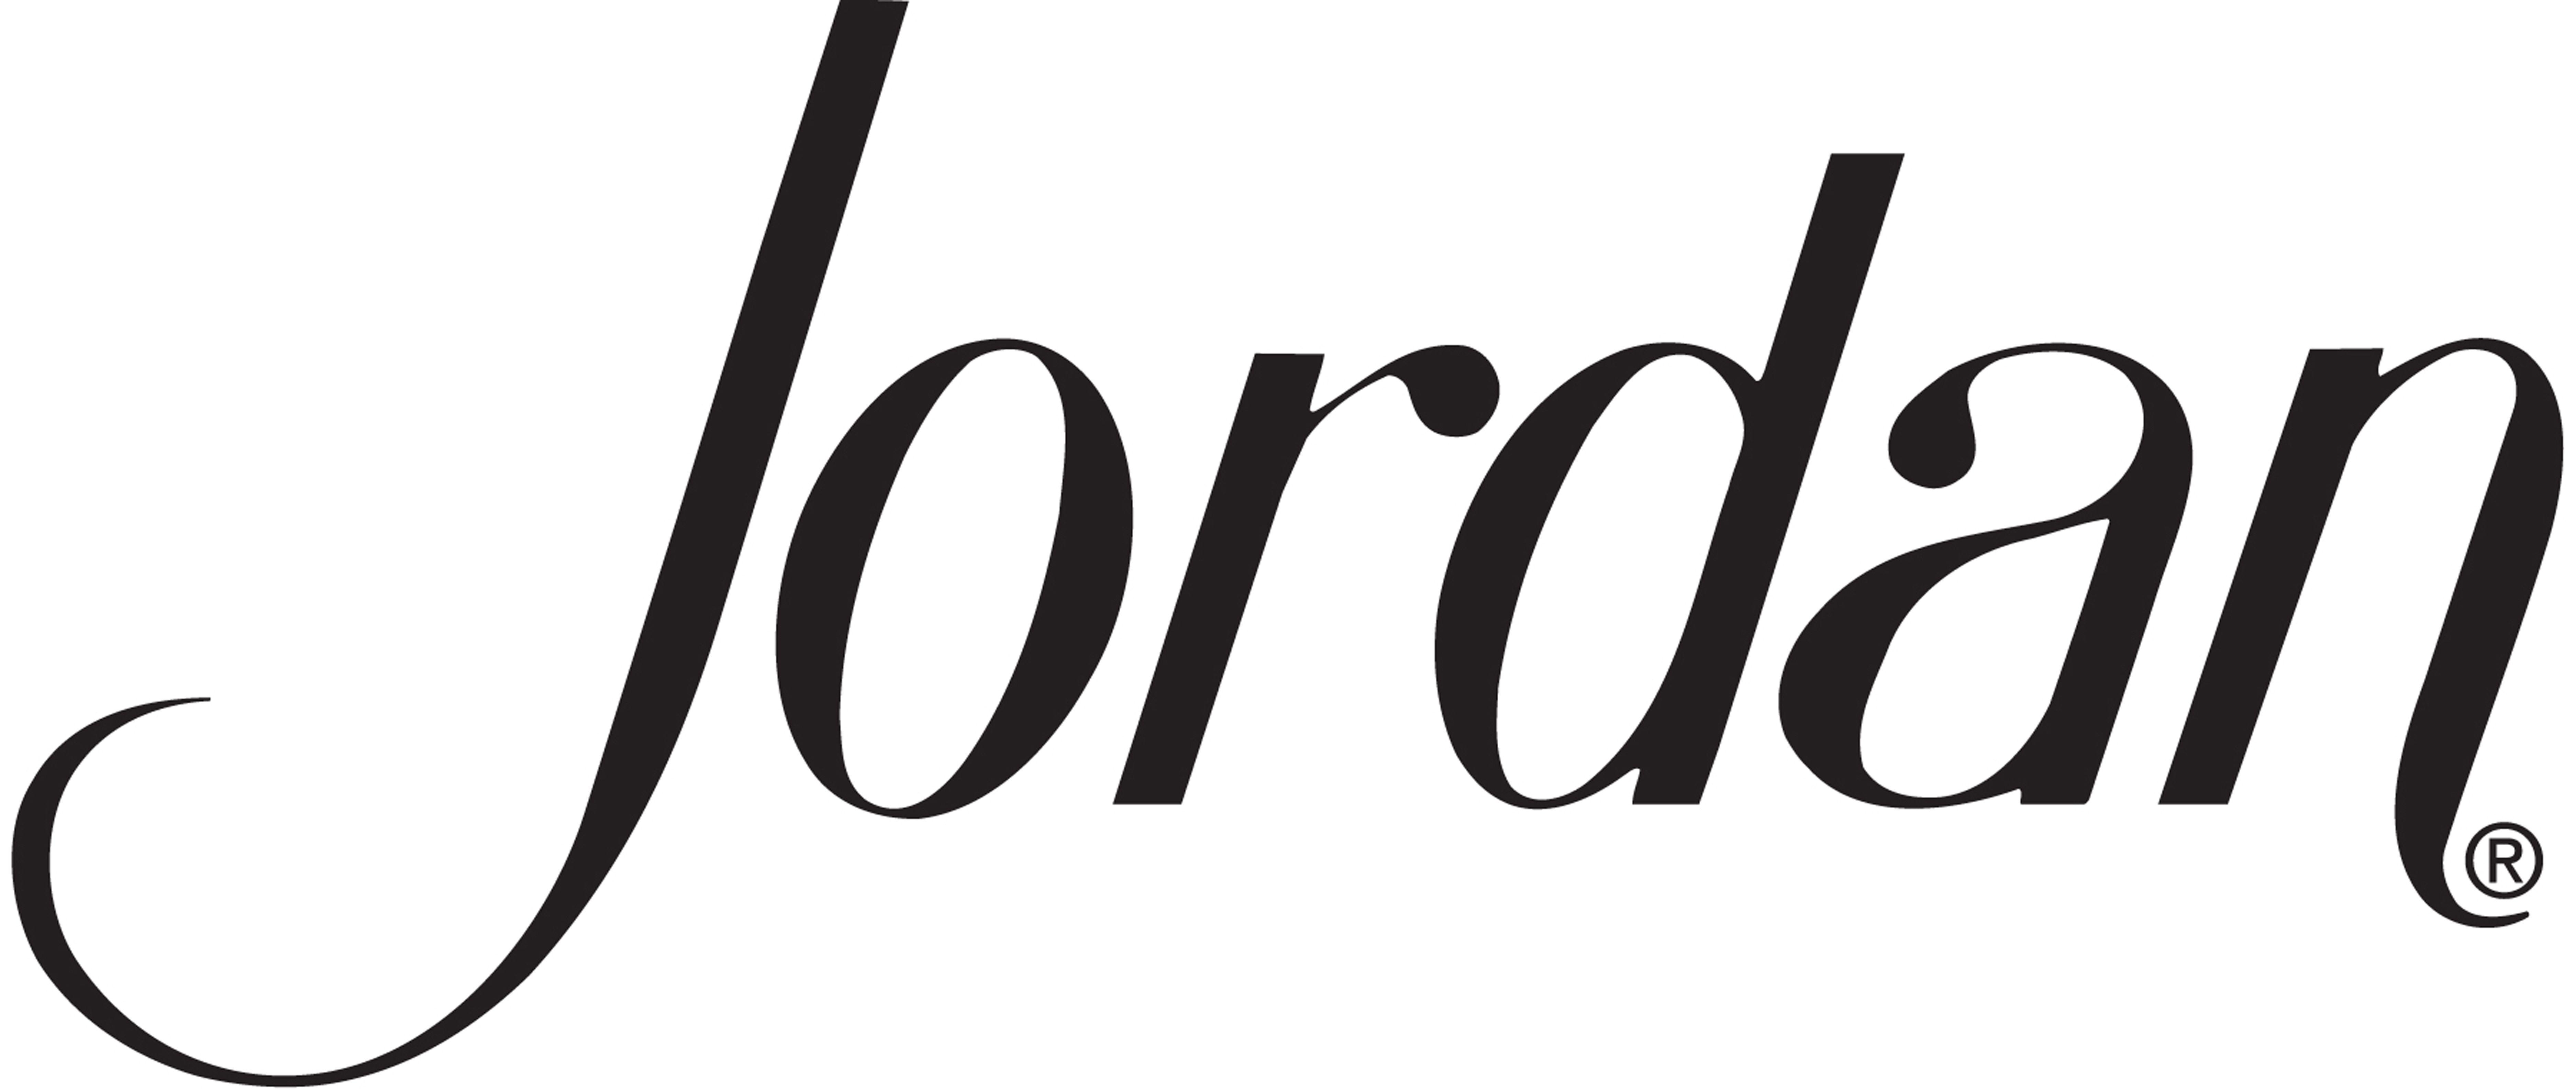 Black and White Jordan Logo - Logos